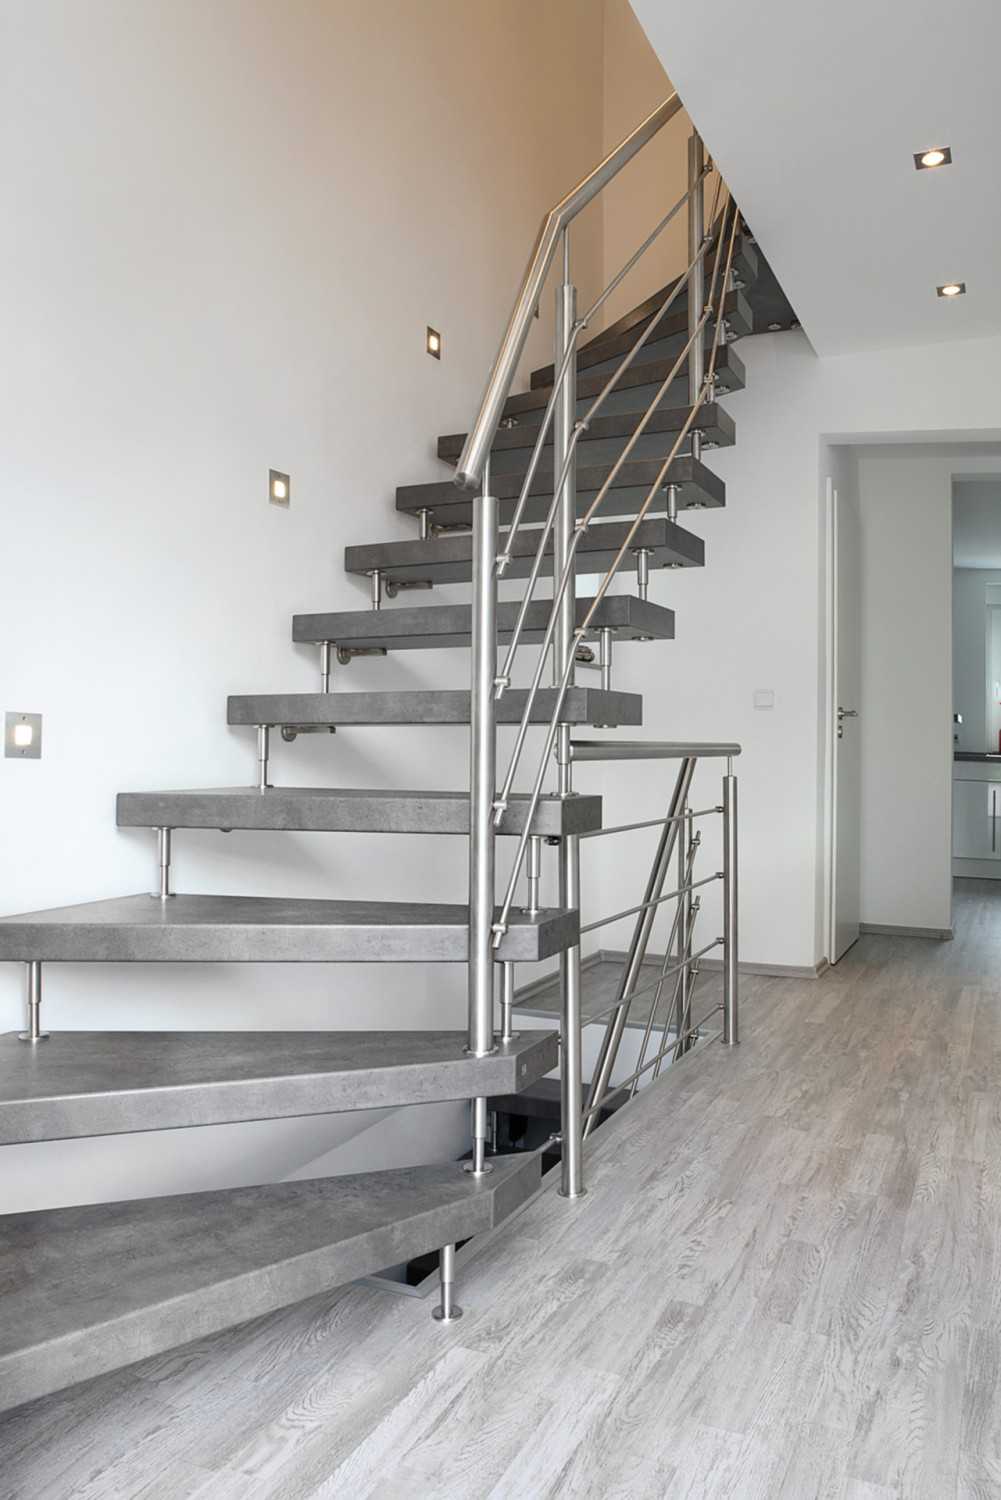 Rund ums Haus Frisch renoviert: Eine neue Treppe erhöht die Sicherheit und bereichert das Ambiente - News, Bild 1